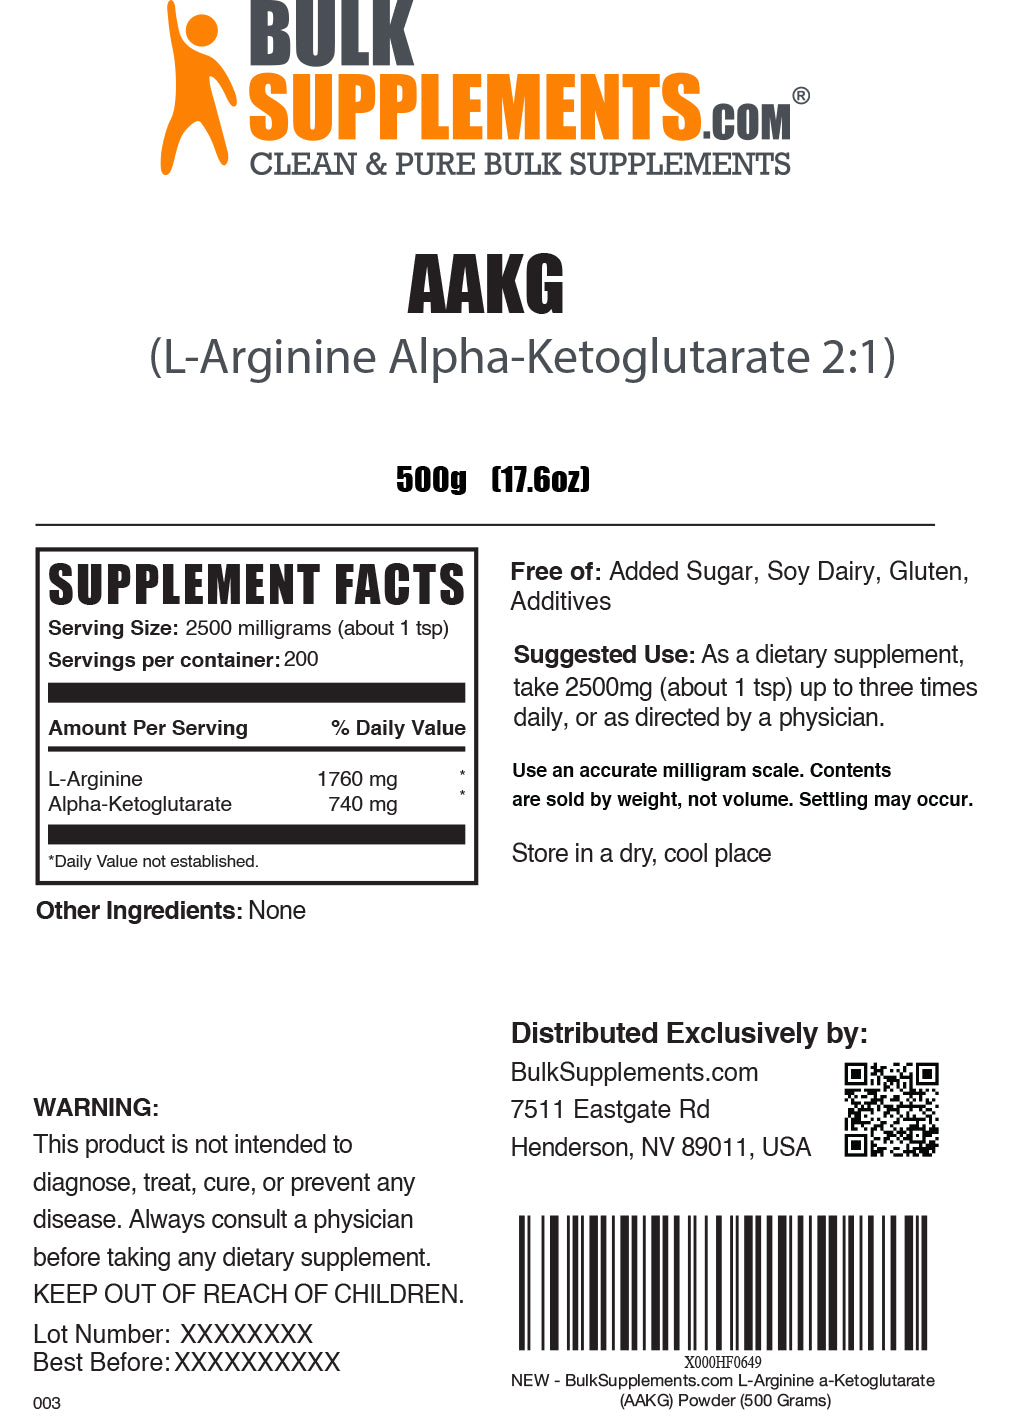 AAKG powder label 500g